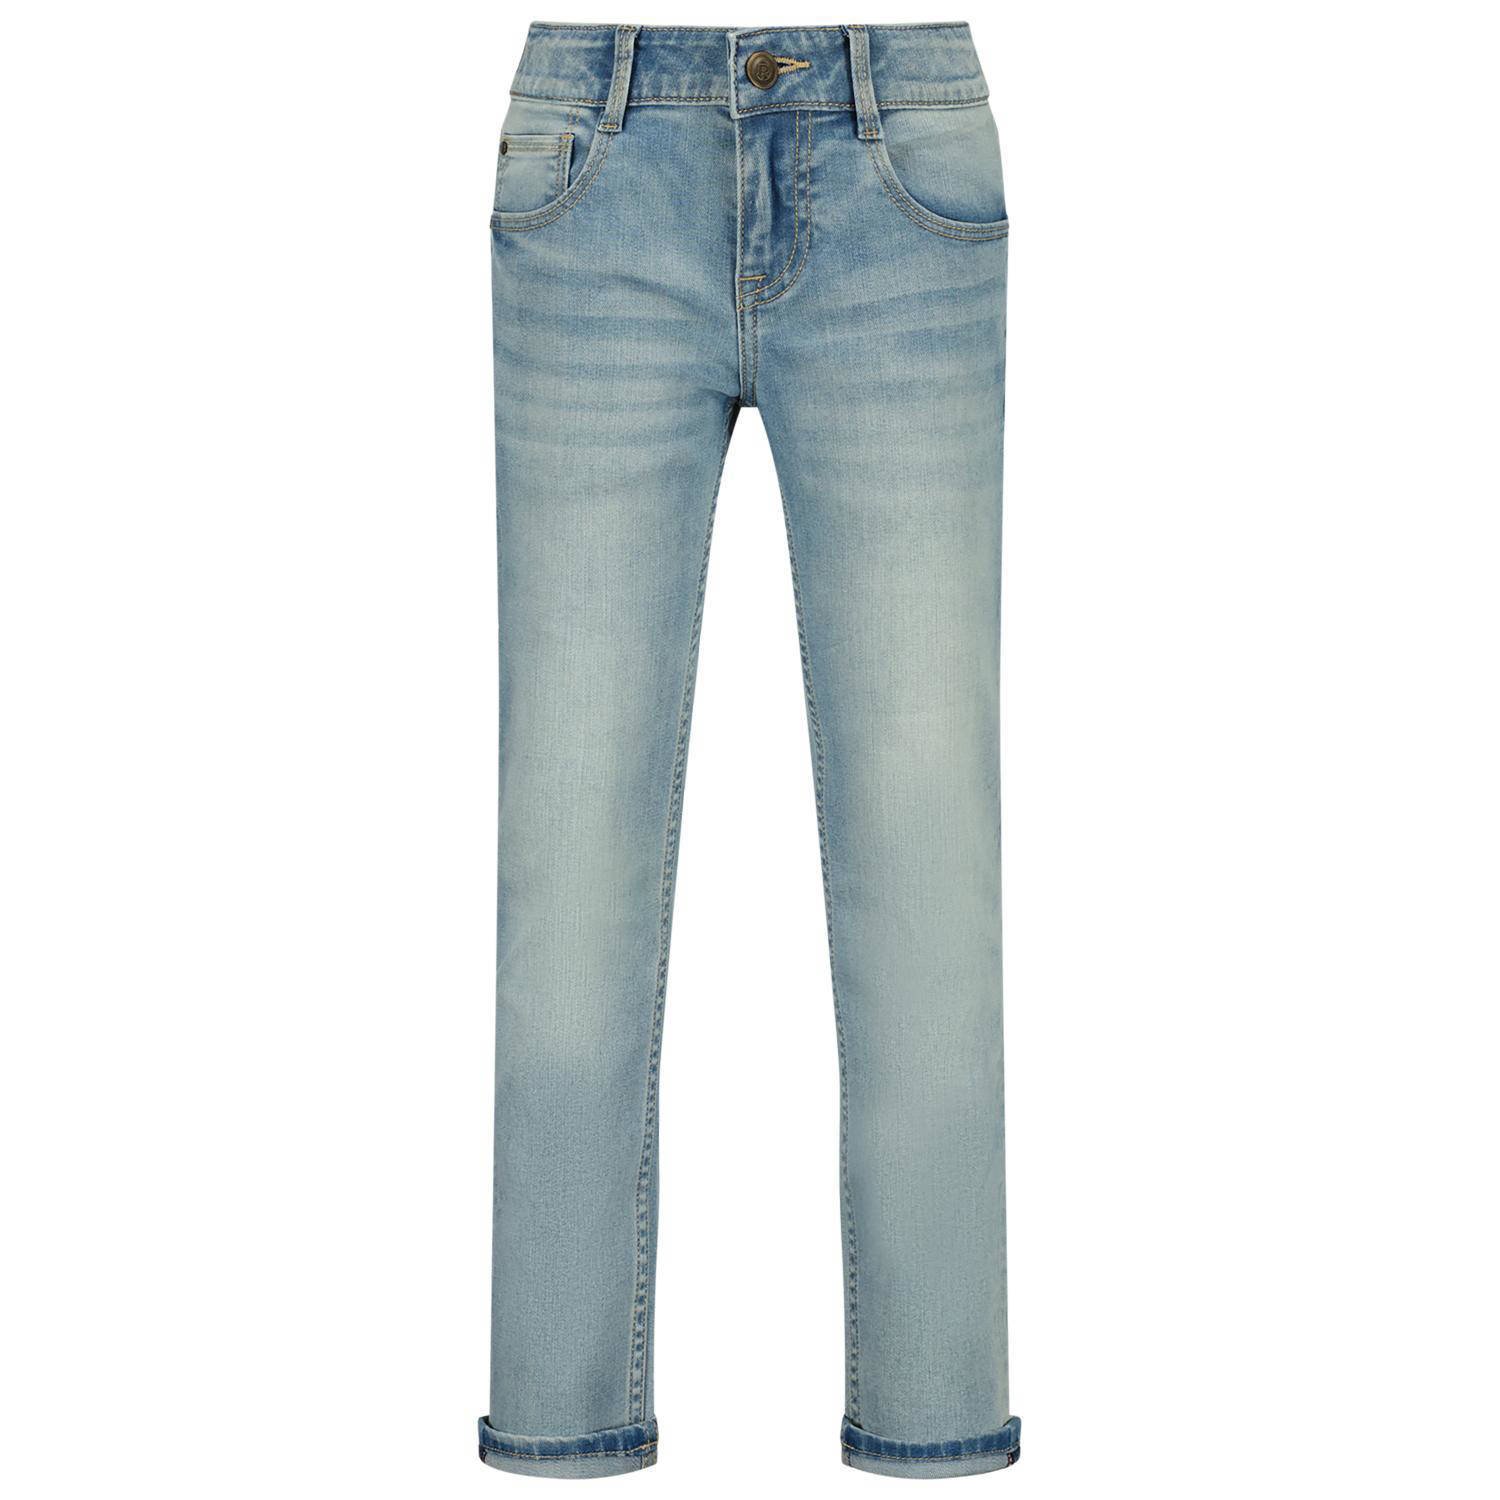 Raizzed straight fit jeans Berlin vintage blue